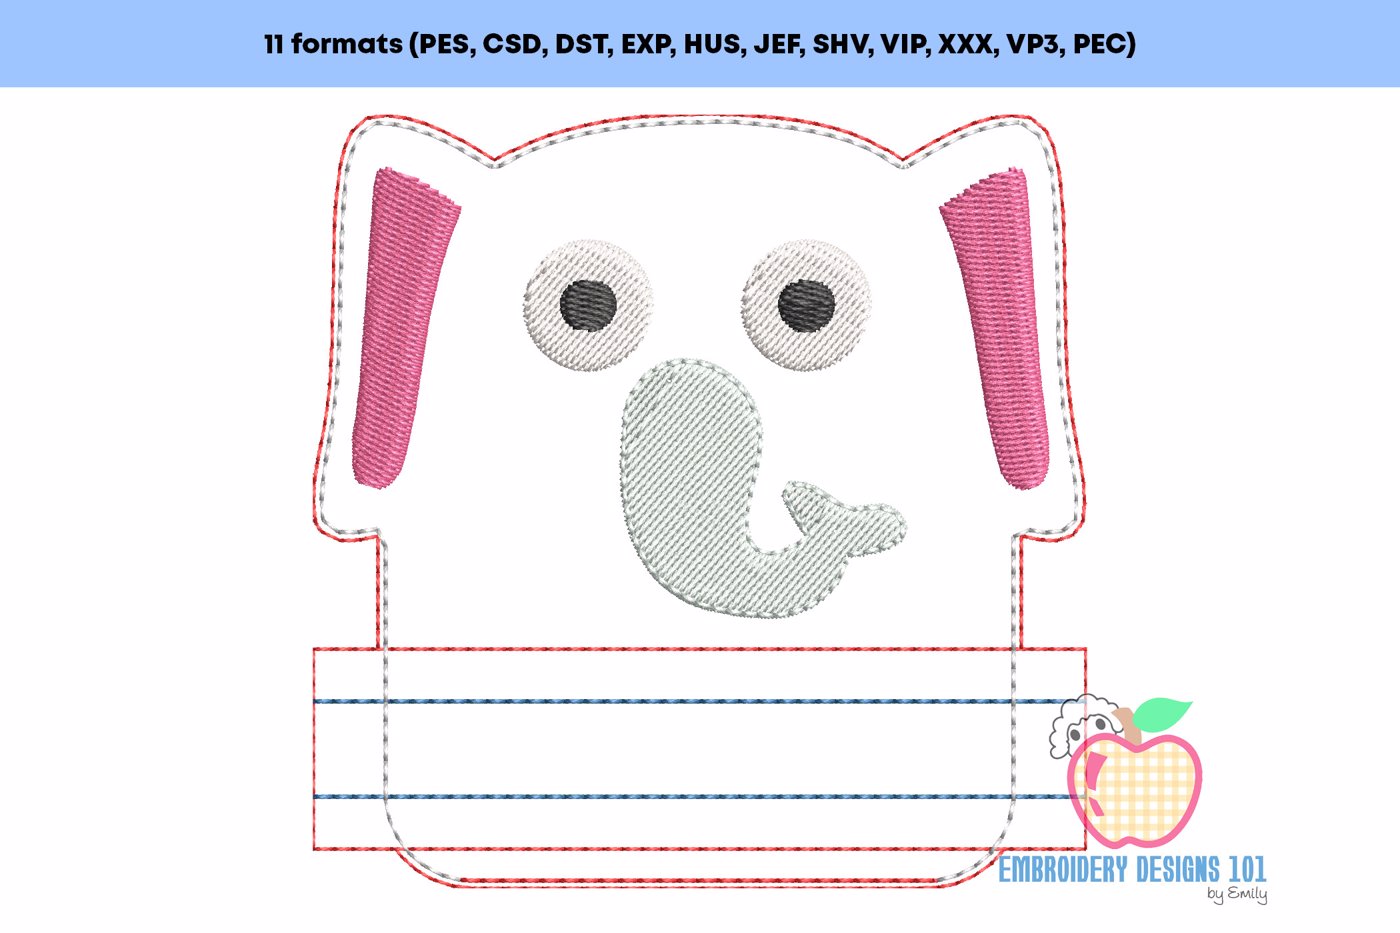 Baby Elephant In The Hoop Zipper Bag 4x4